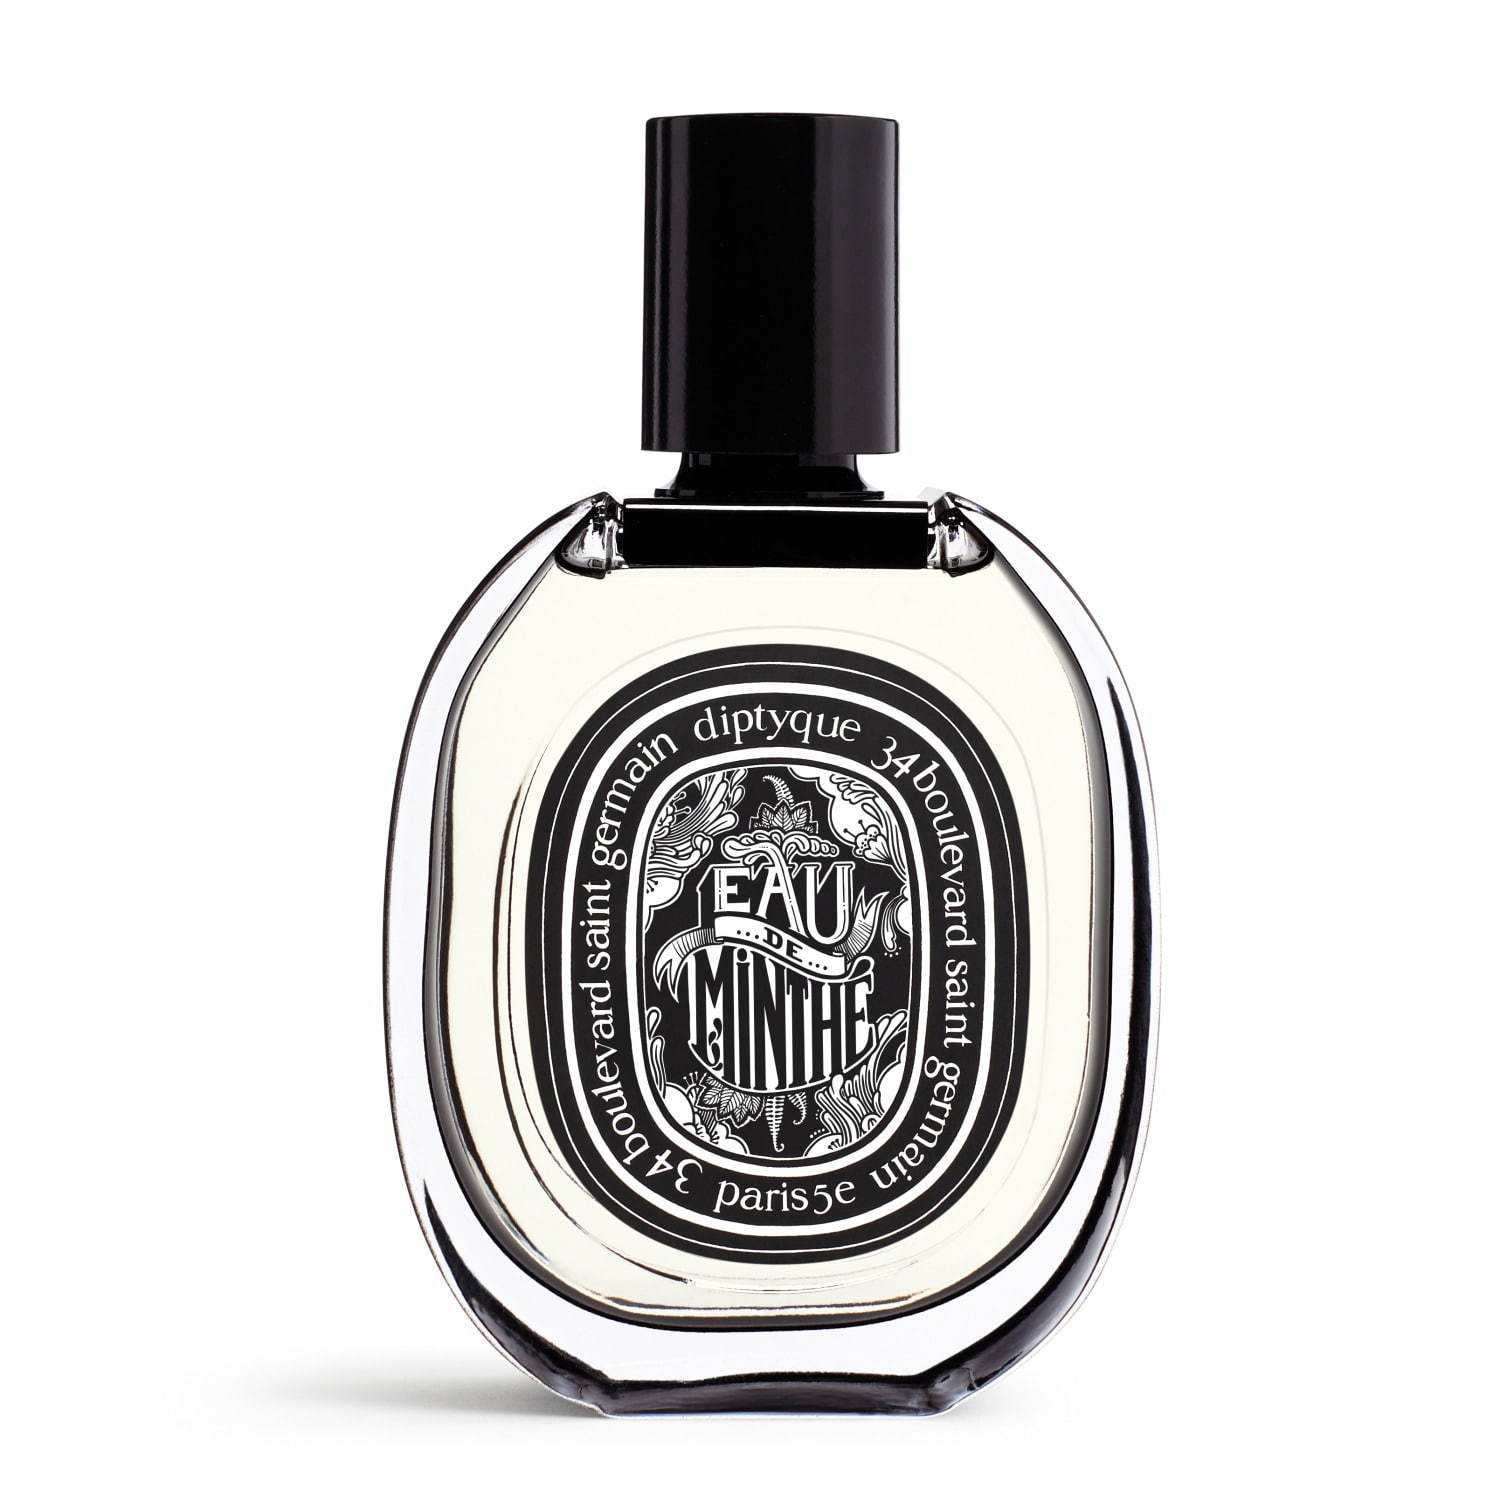 Eau de Minthé Diptyque perfume - a new fragrance for women and men 2019